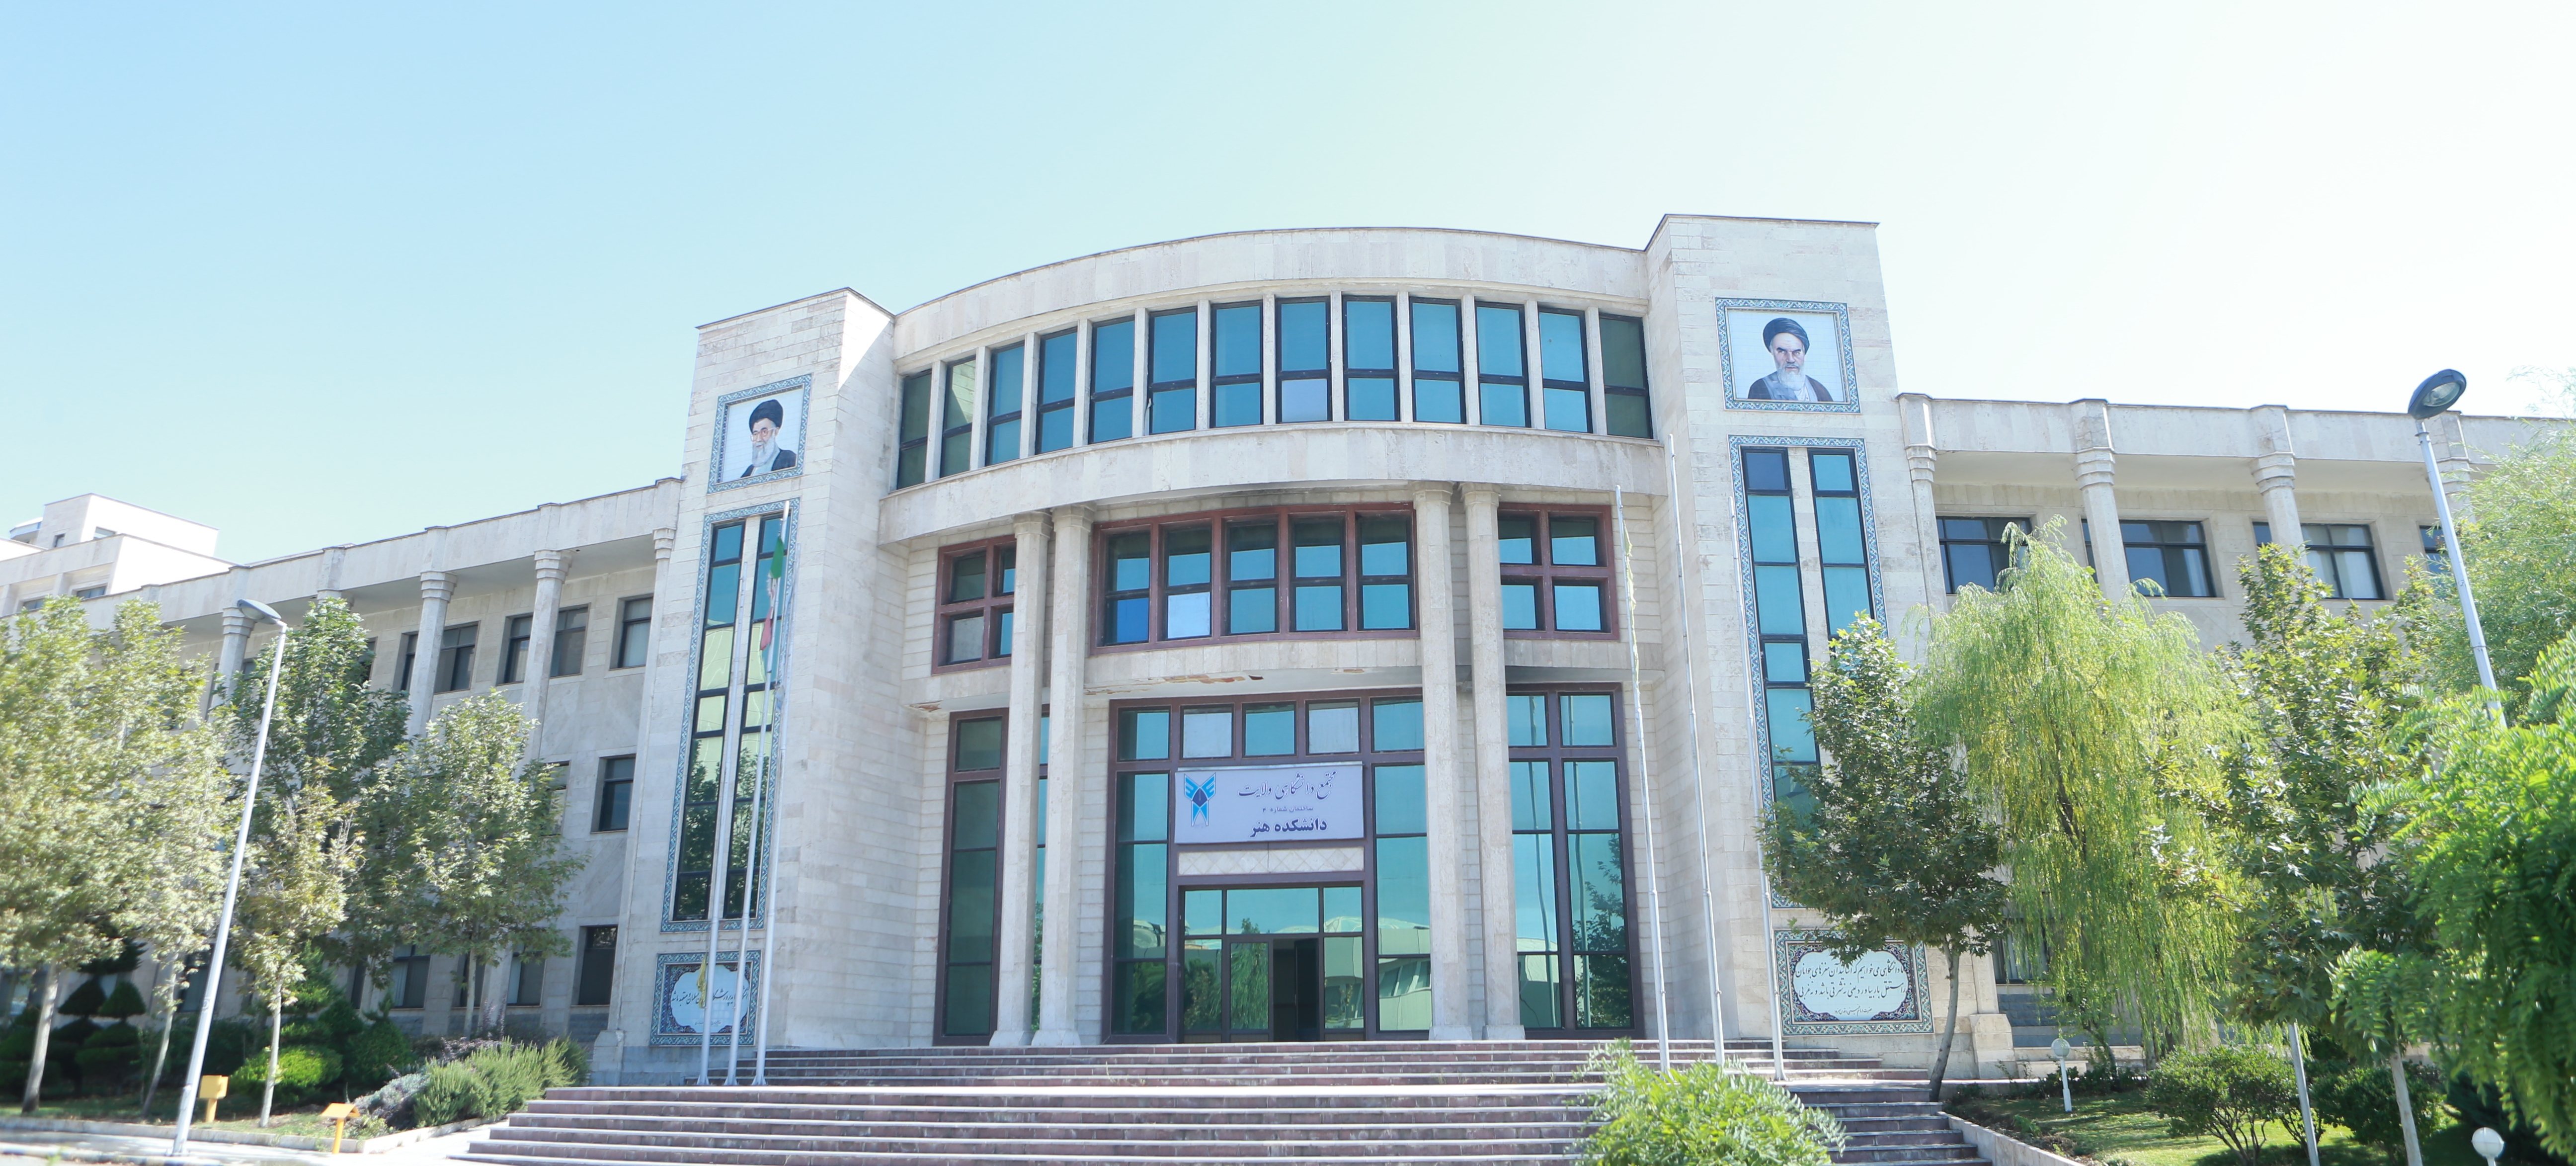 دانشگاه روانشناسی تهران مرکز
